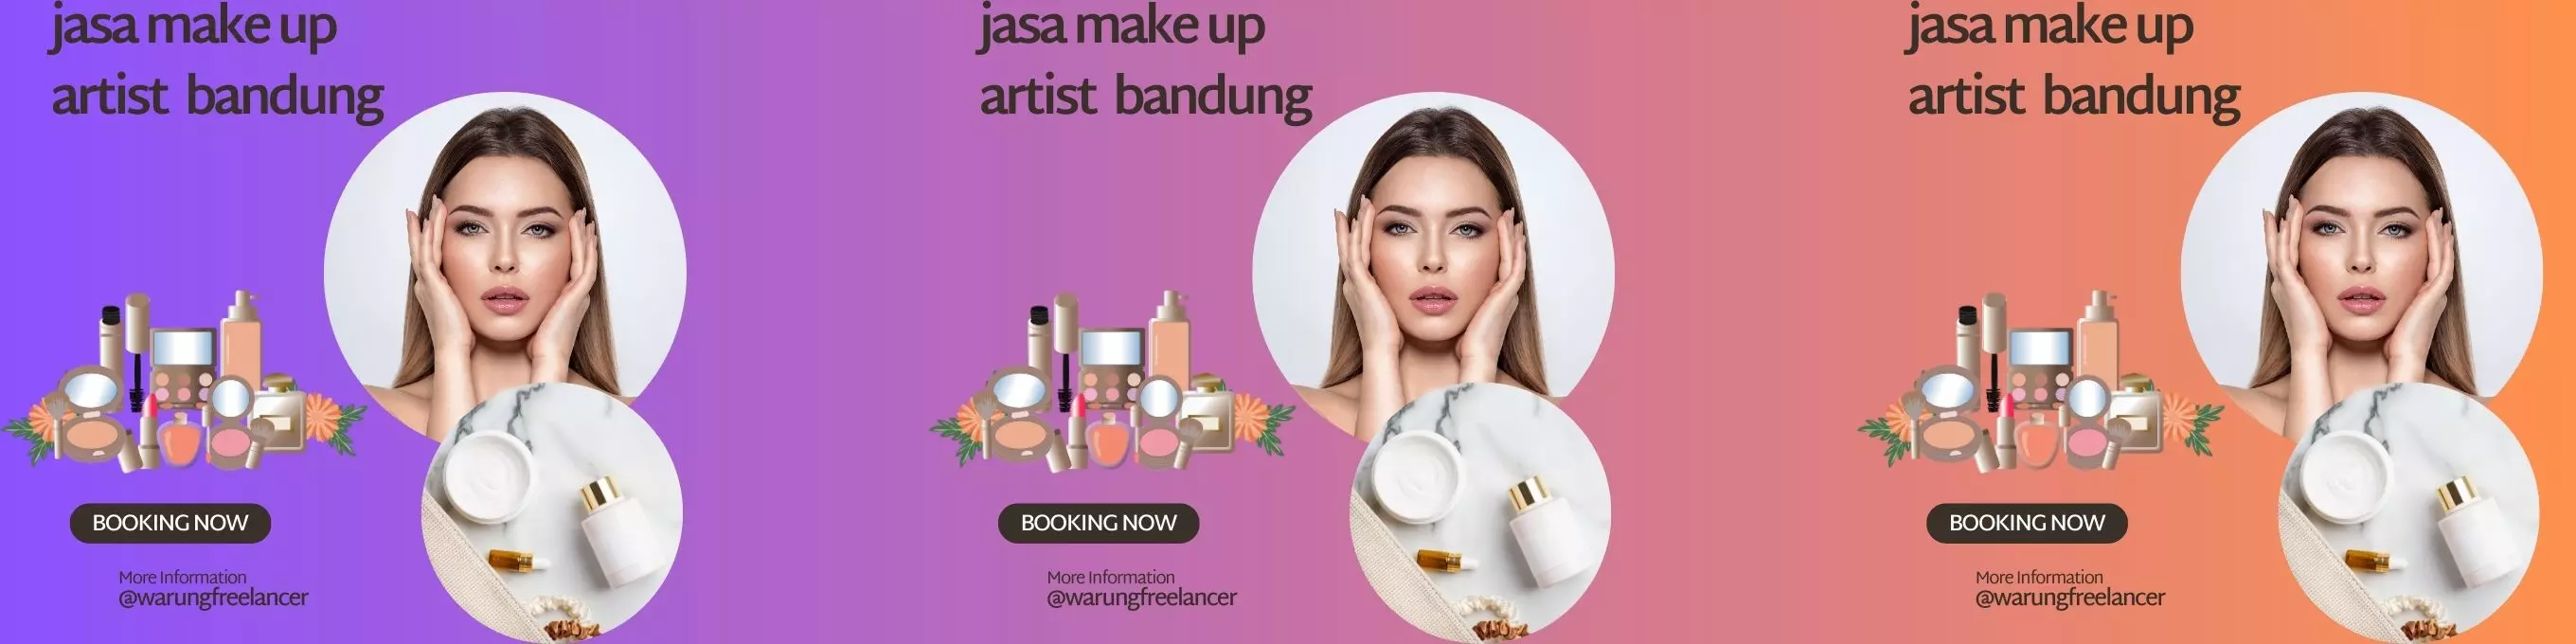 Jasa Make Up Artist Bandung